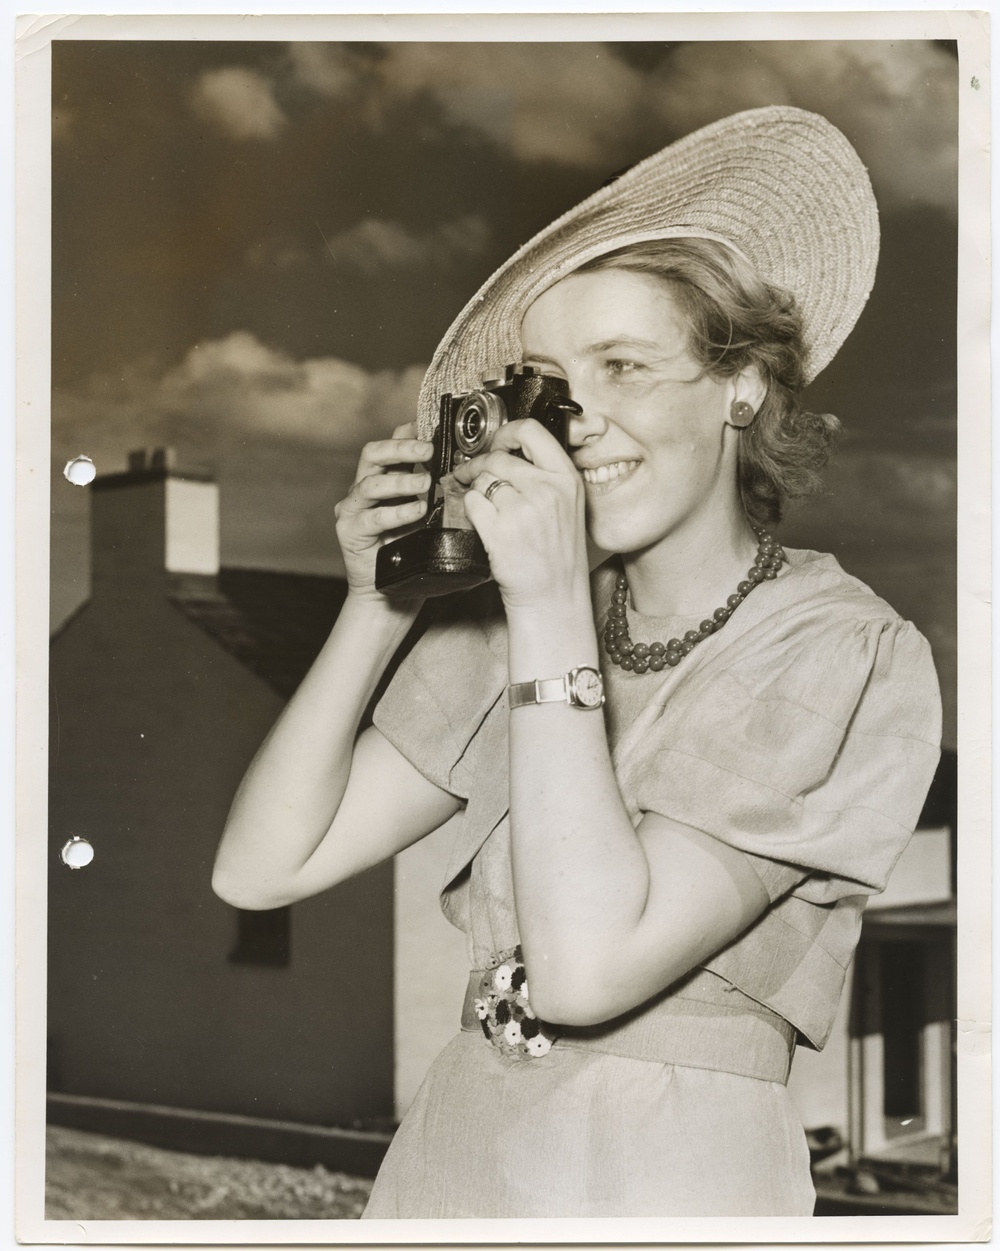 Hillevi Svedberg (1919-1990) på resa i USA, där hon intervjuas av en amerikansk tidning, 1937. 
Fotograf: Foster E Stansfield. ArkDes samling.

